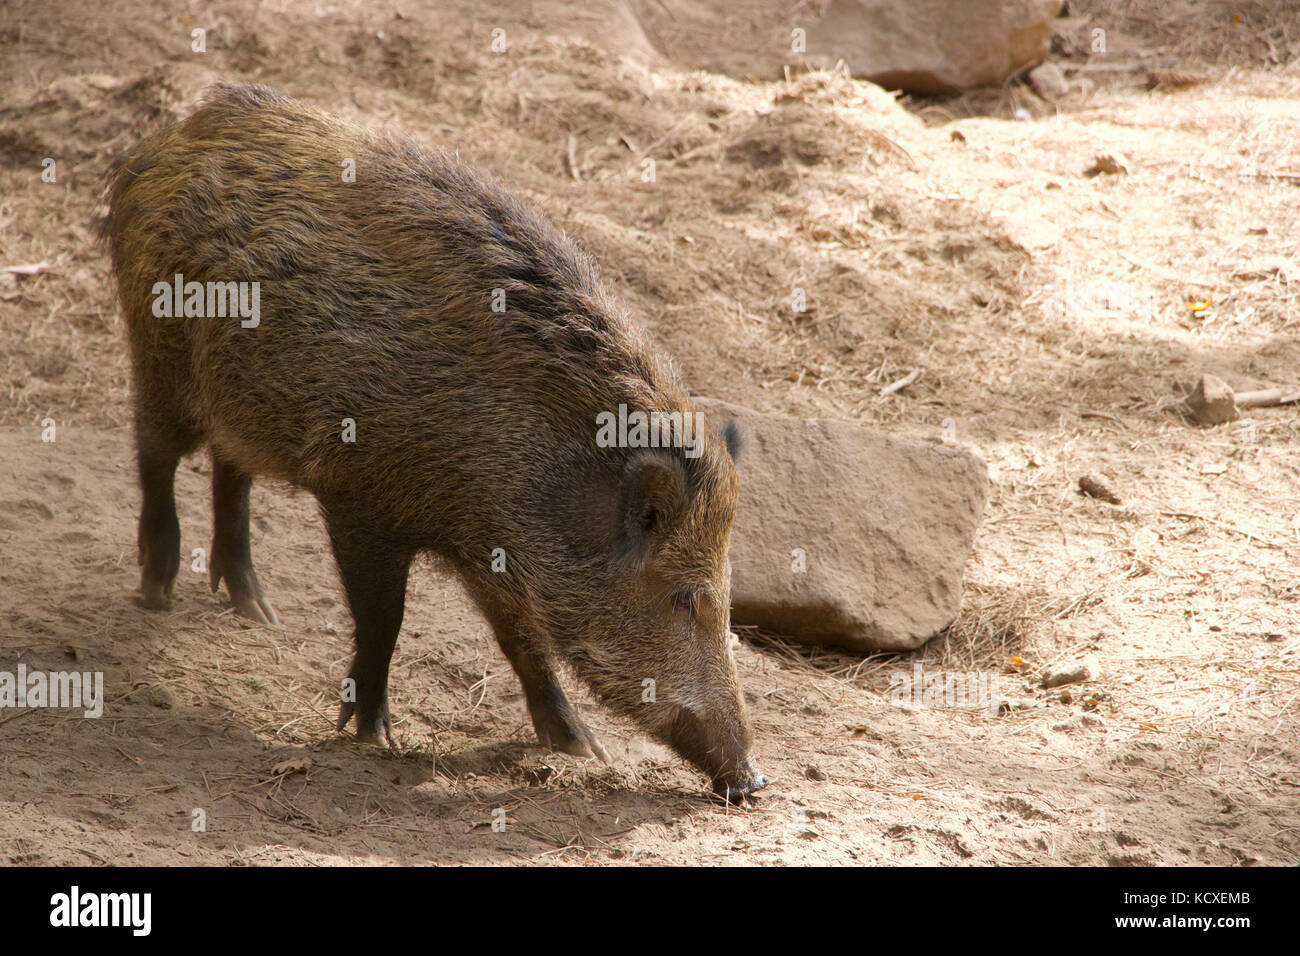 Boar, Wild boar. Lives at the Parque Biológico, in Gaia, Porto, Portugal. Animal conservation. Stock Photo